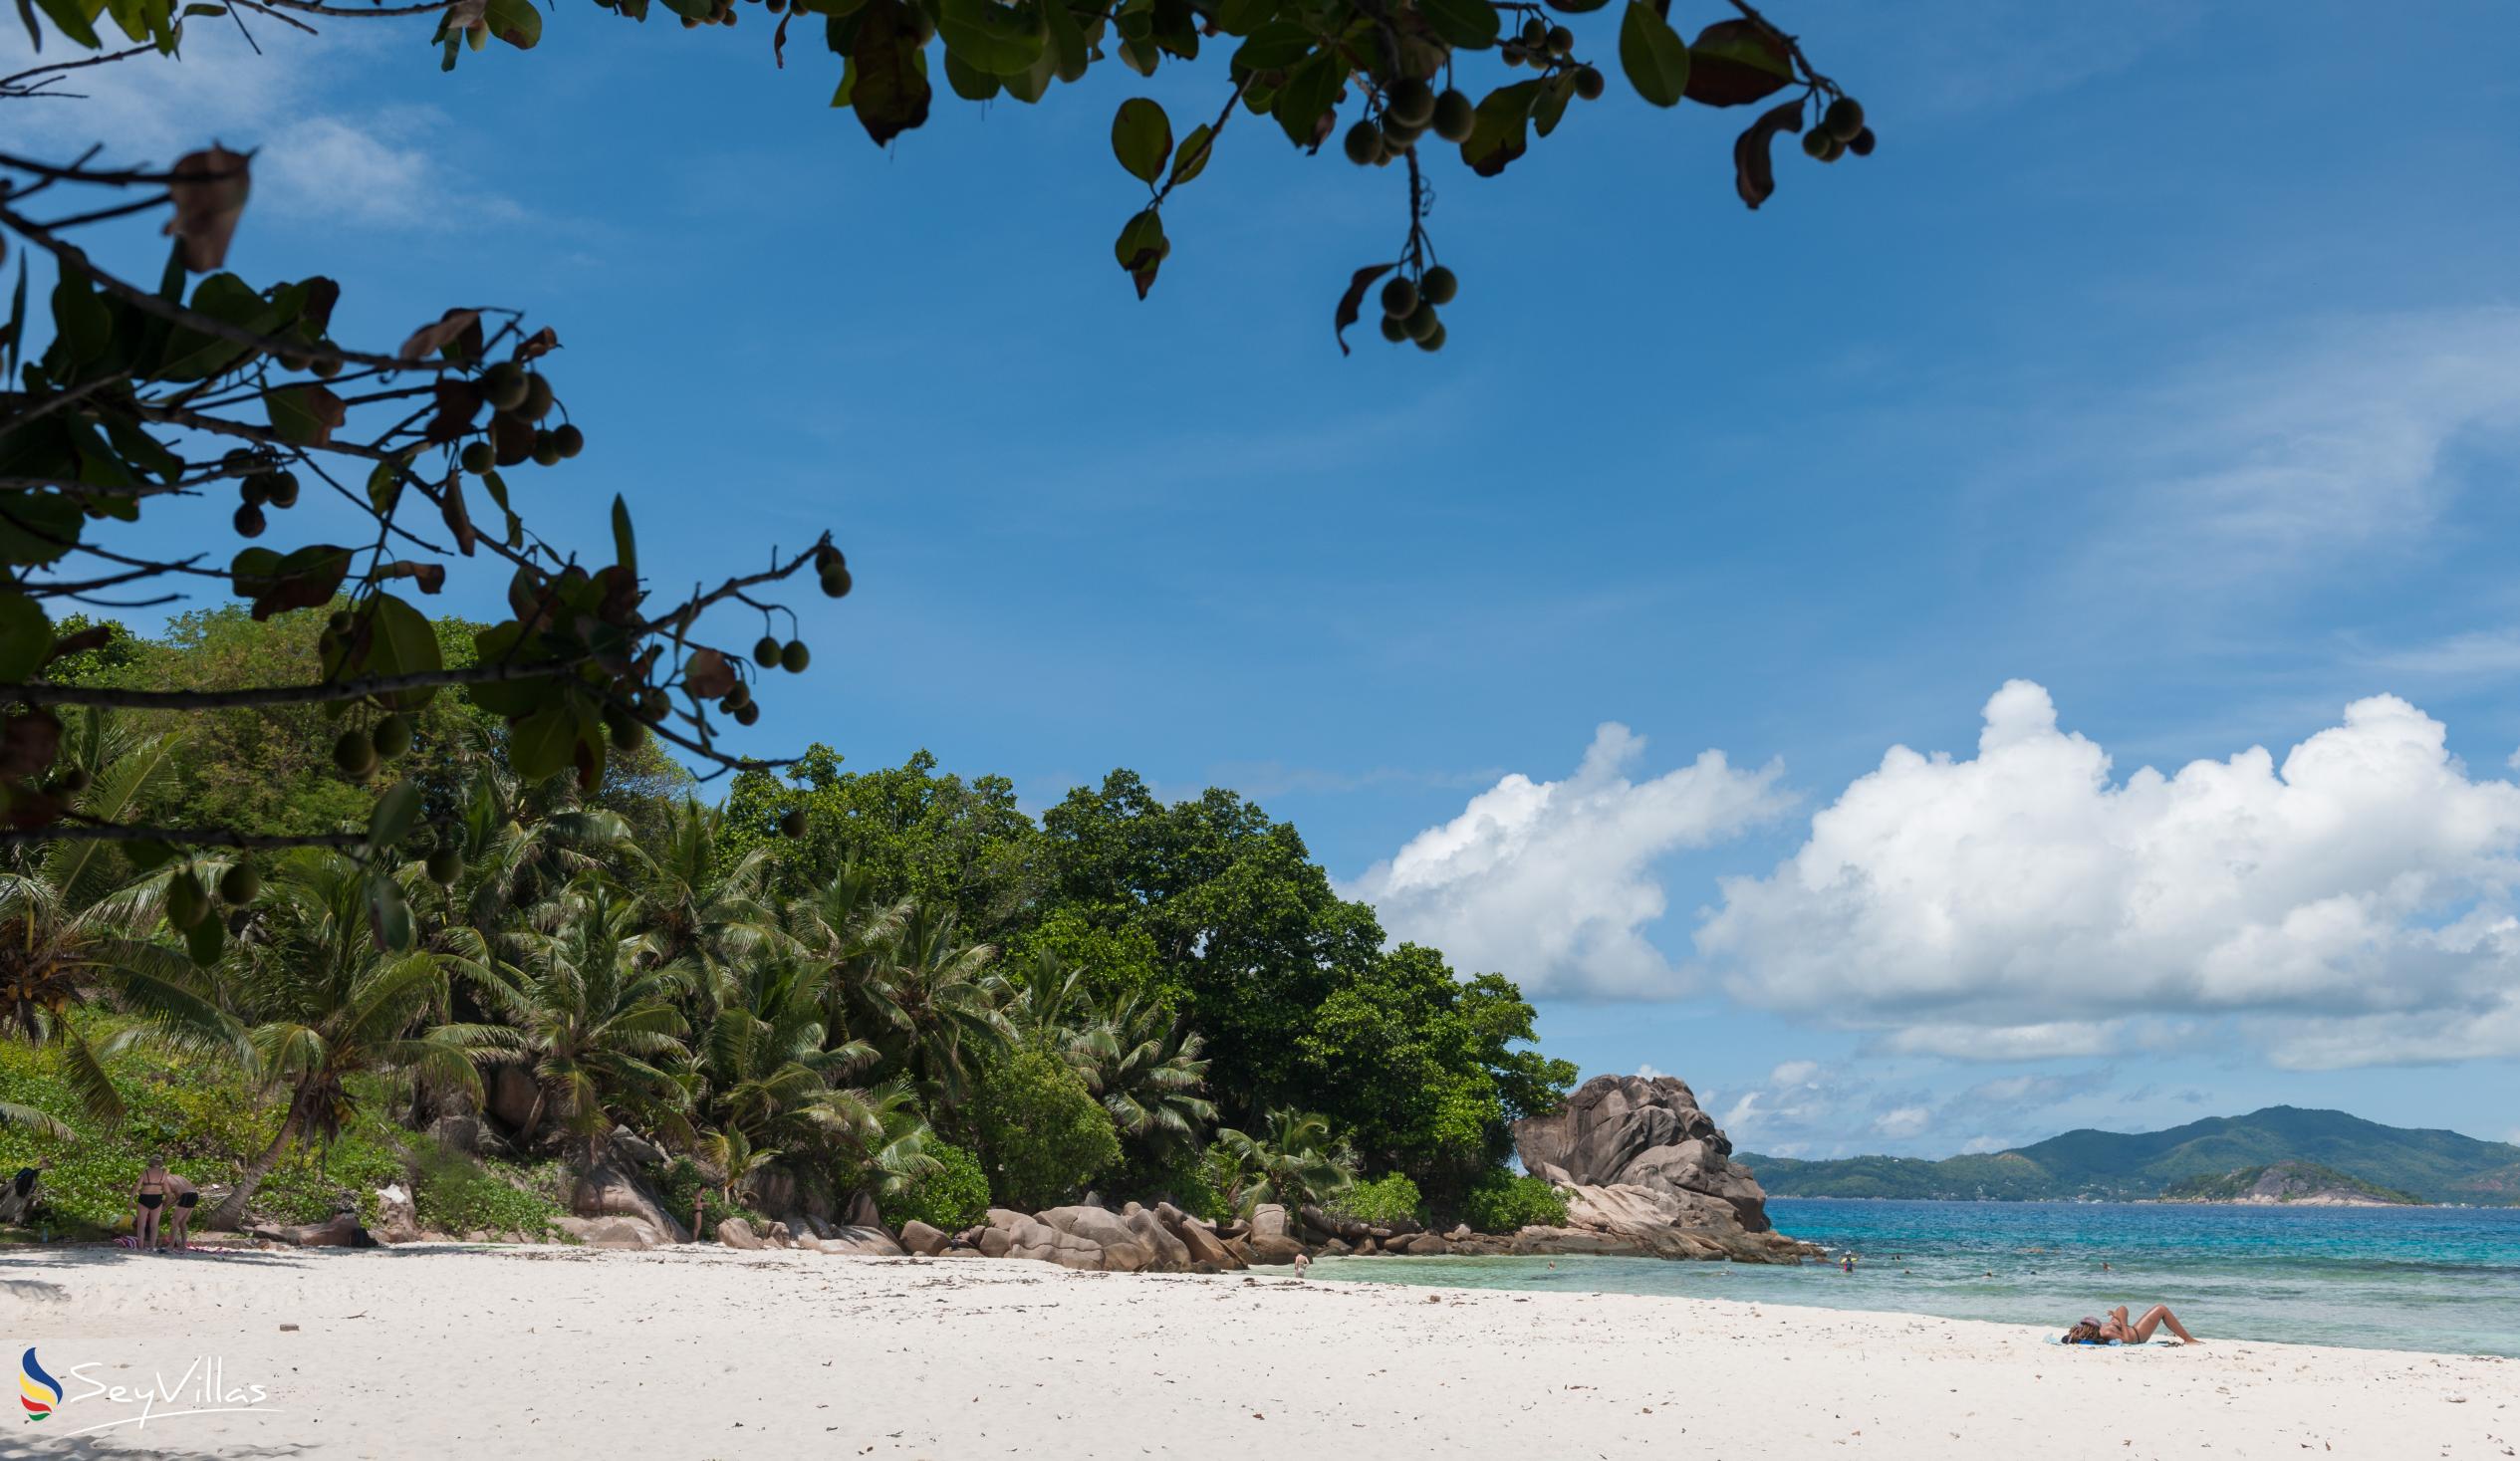 Foto 26: Anse Severe Beach Villa - Posizione - La Digue (Seychelles)